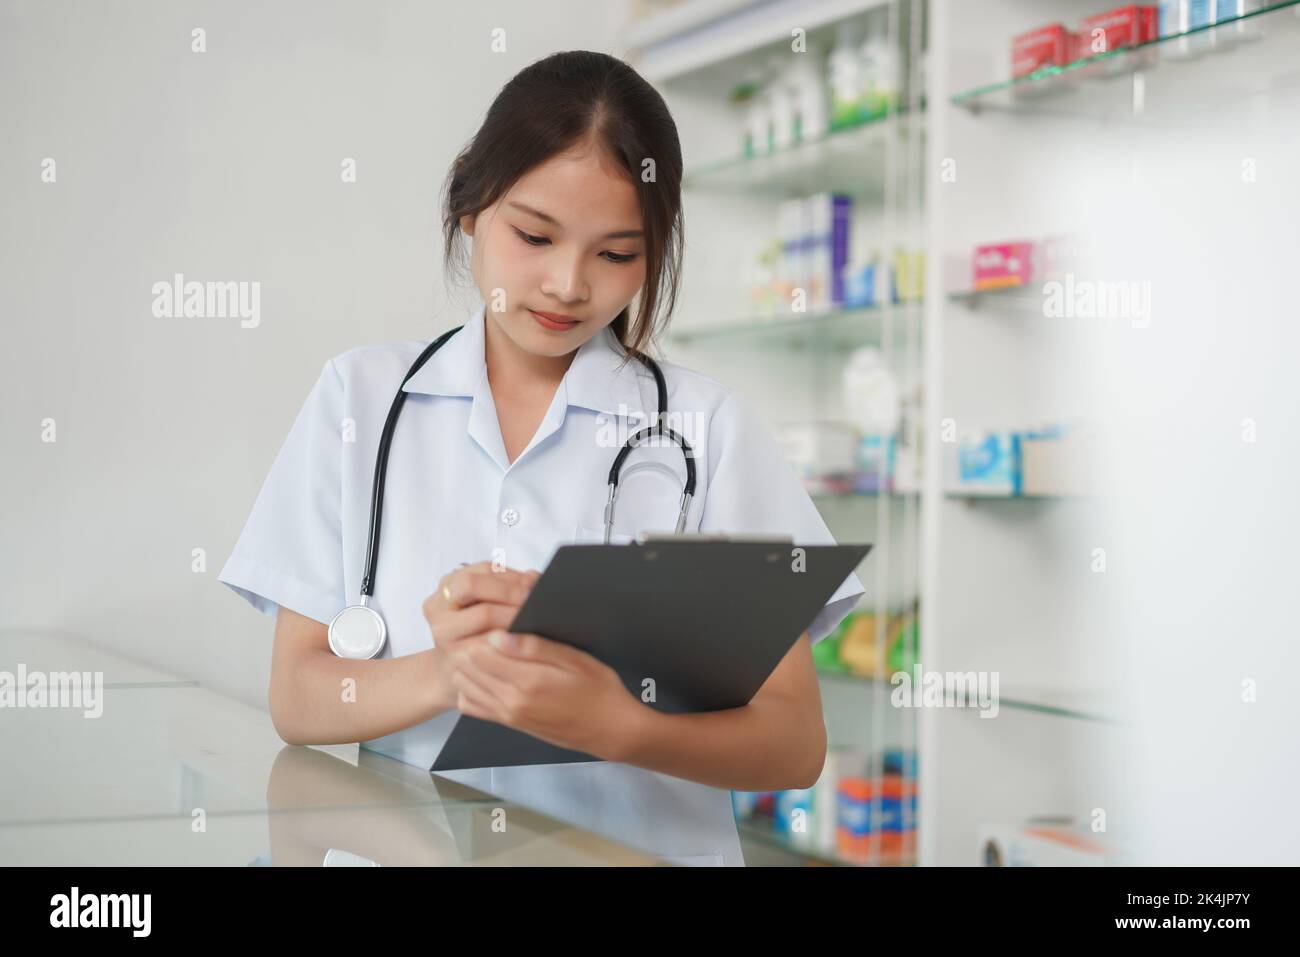 Medizin und Gesundheitskonzept, Apothekerin schreibt Rezept und medizinische Eigenschaften. Stockfoto